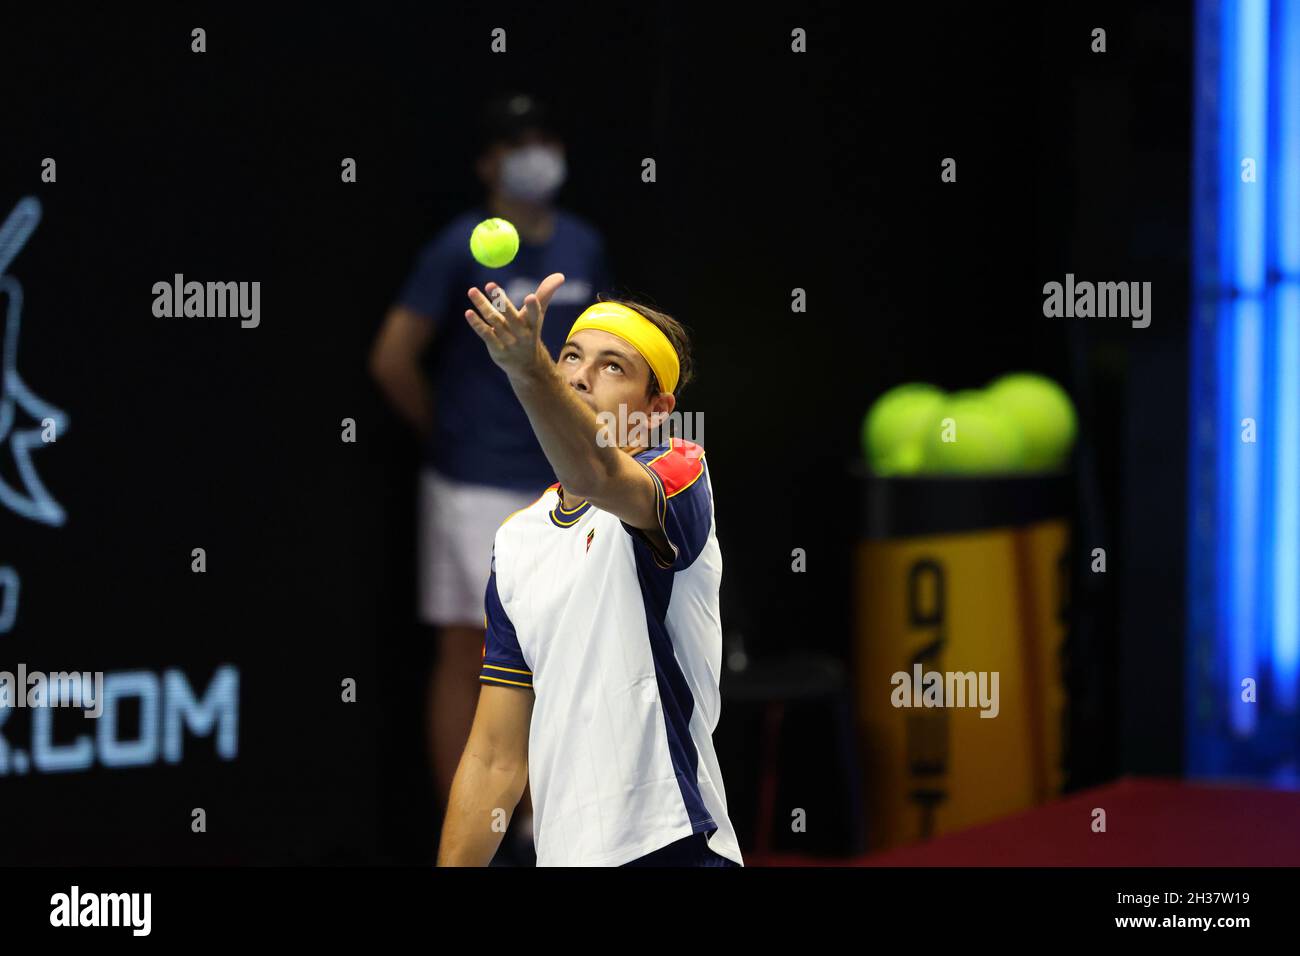 San Petersburgo, Rusia - 26 de octubre de 2021: Tenis. Taylor Fritz juega durante un partido contra Emil Ruusuvuori en el torneo de tenis del Abierto de San Petersburgo 2021. Foto de stock